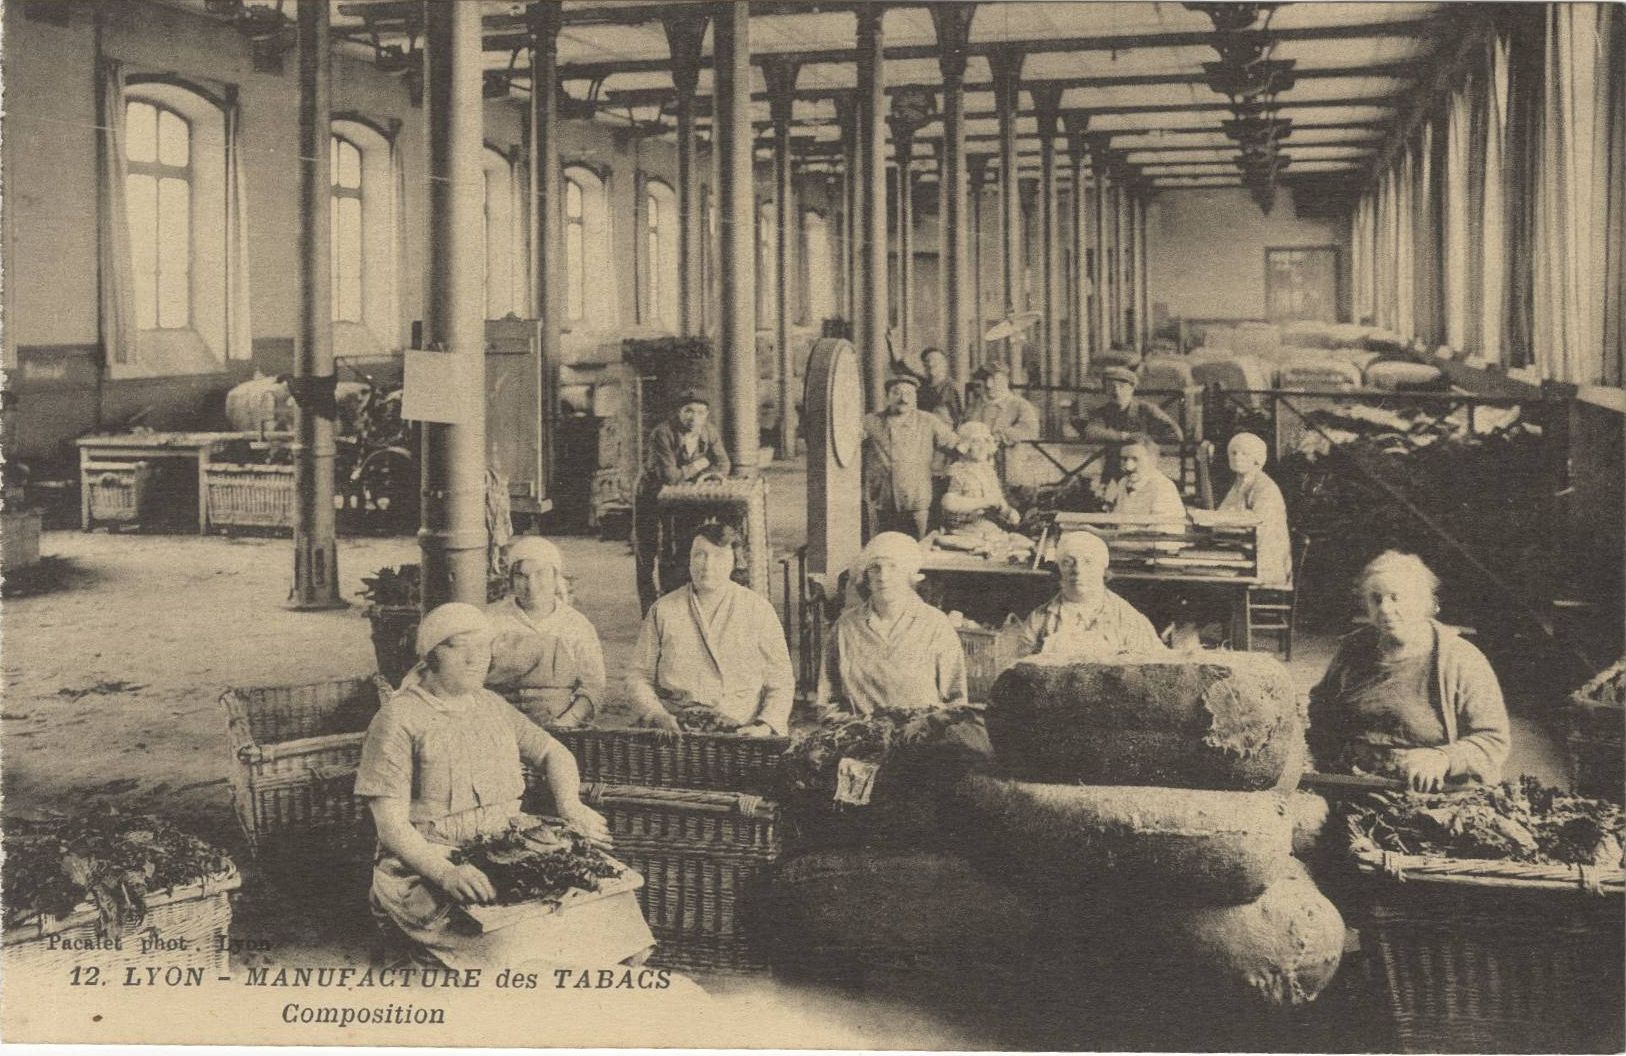 Manufacture des tabacs, composition : carte postale NB (vers 1930, cote : 4FI/4230)